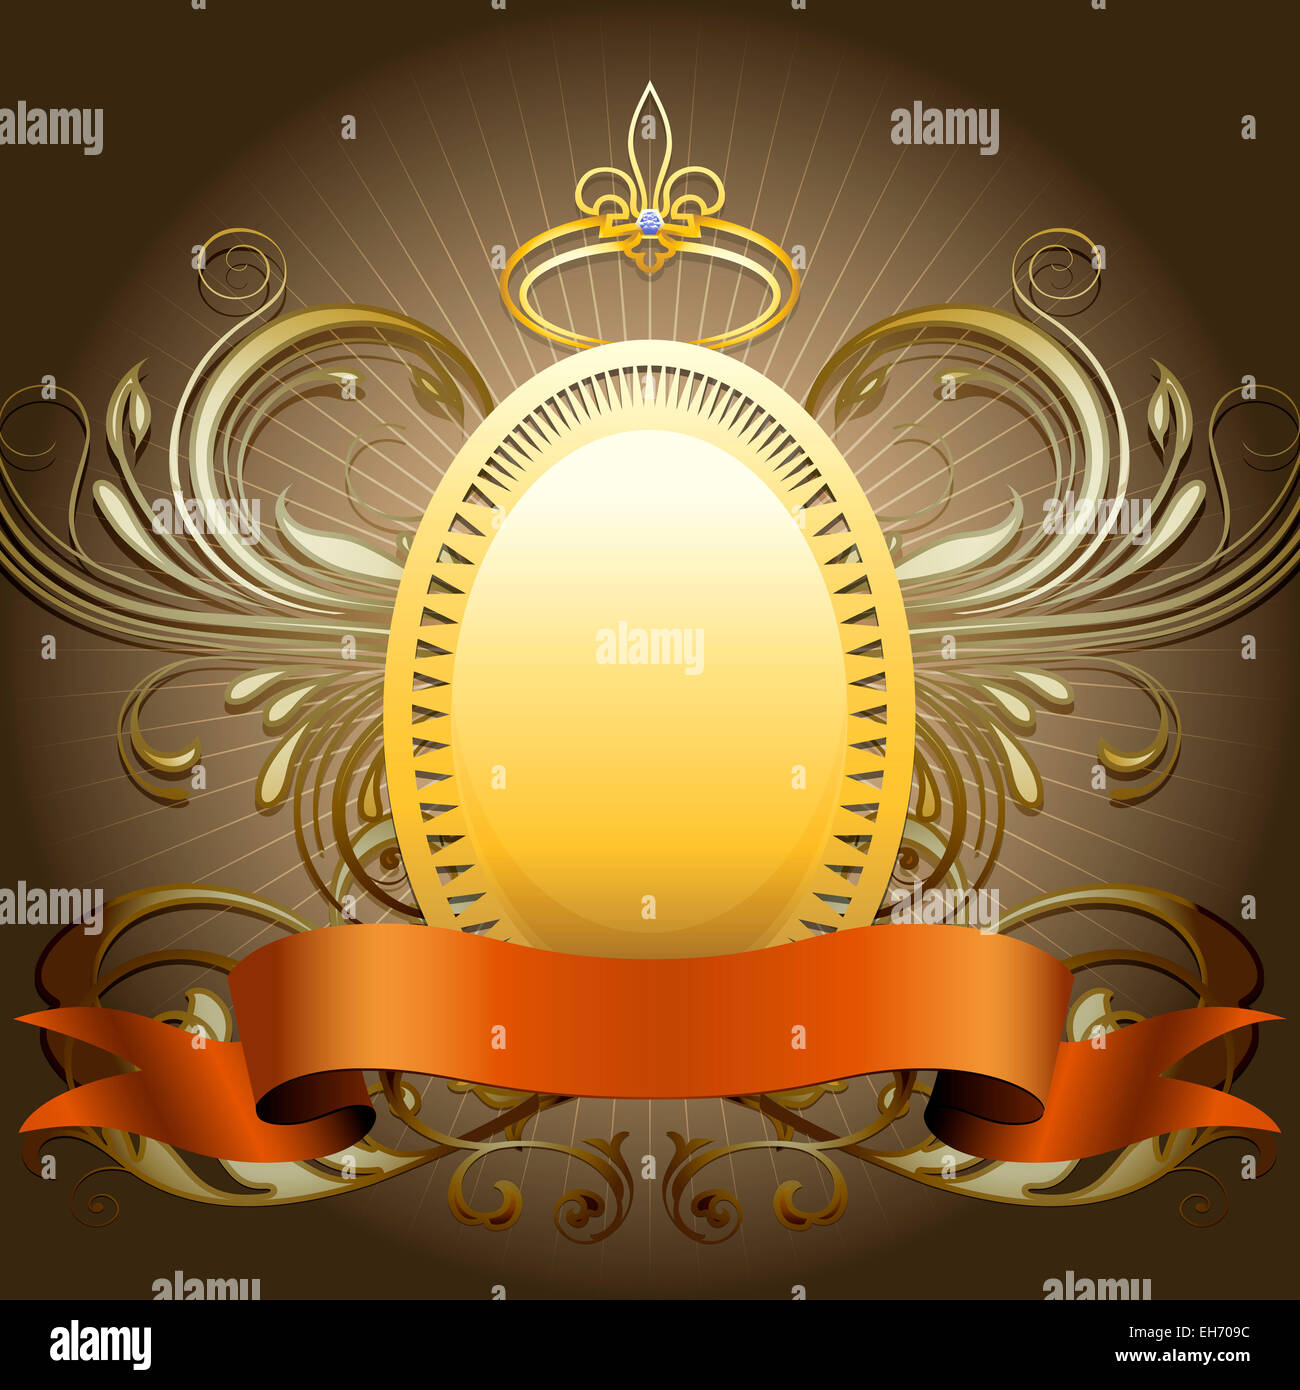 Il scudo dorato con corona e nastro contro uno sfondo scuro disegnato in stile classico Foto Stock